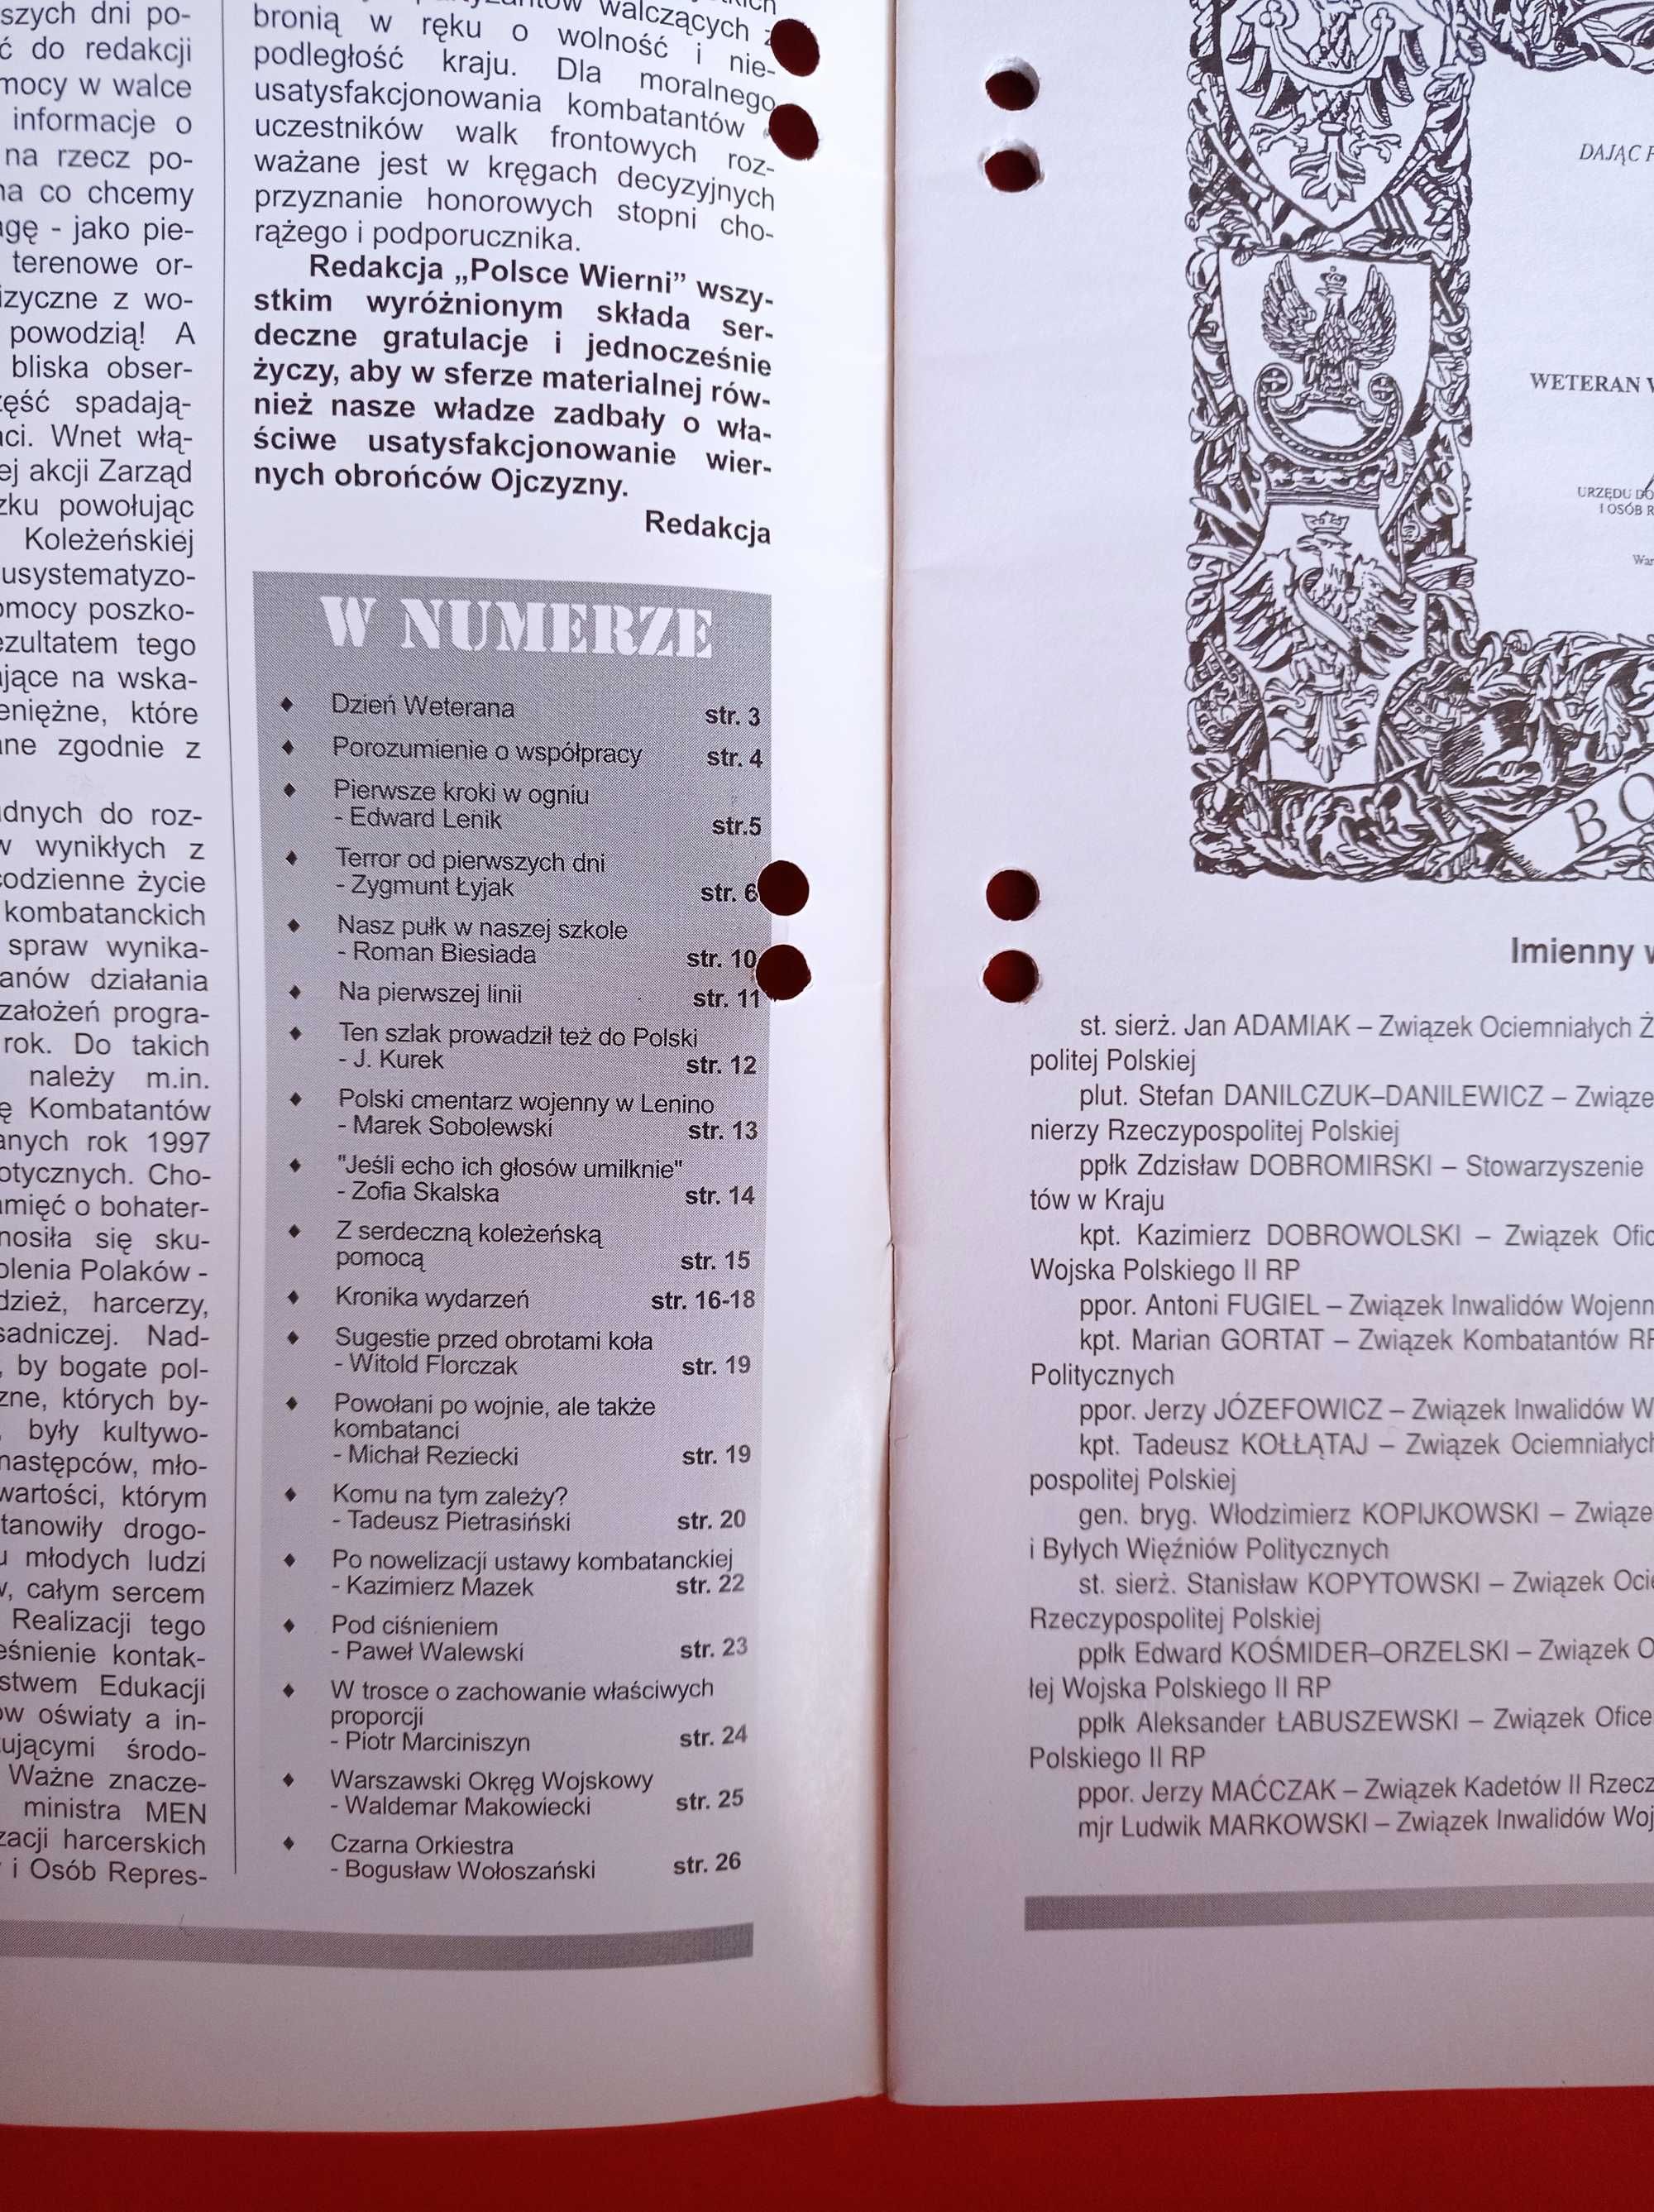 Polsce wierni nr 10/1997, październik 1997